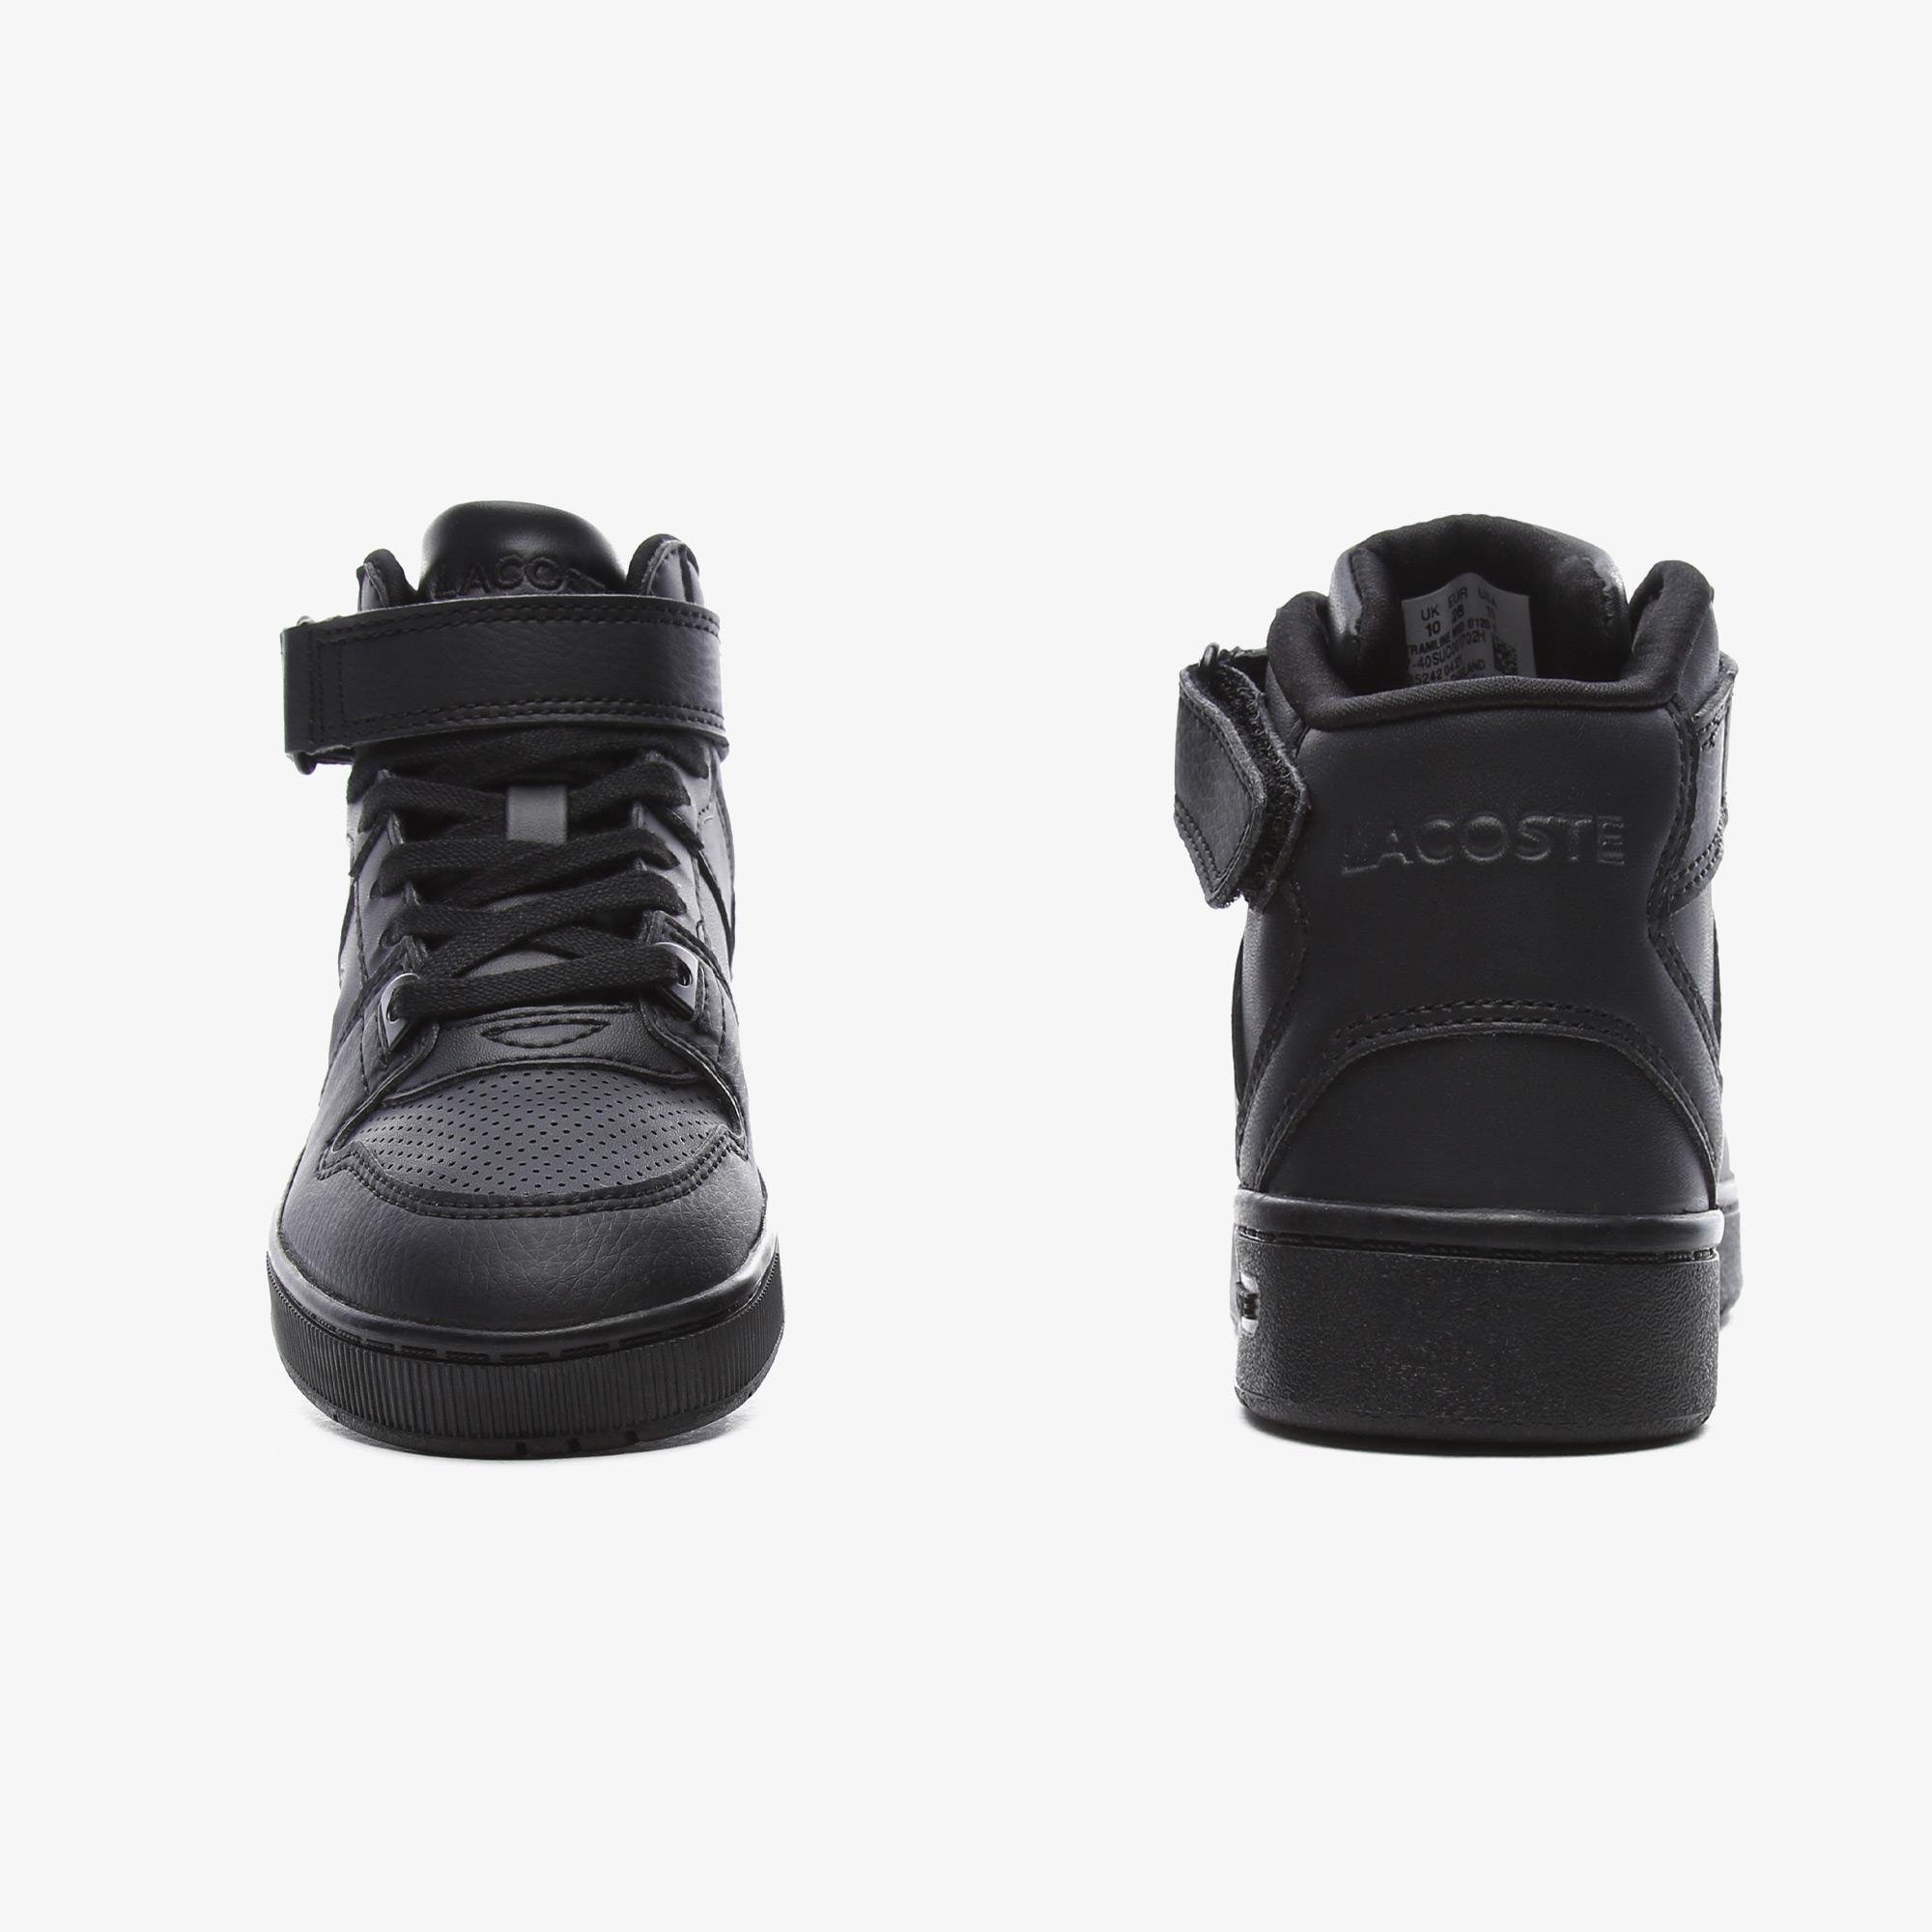 Lacoste Tramline Mid 0120 1 Suc Çocuk Siyah Sneaker